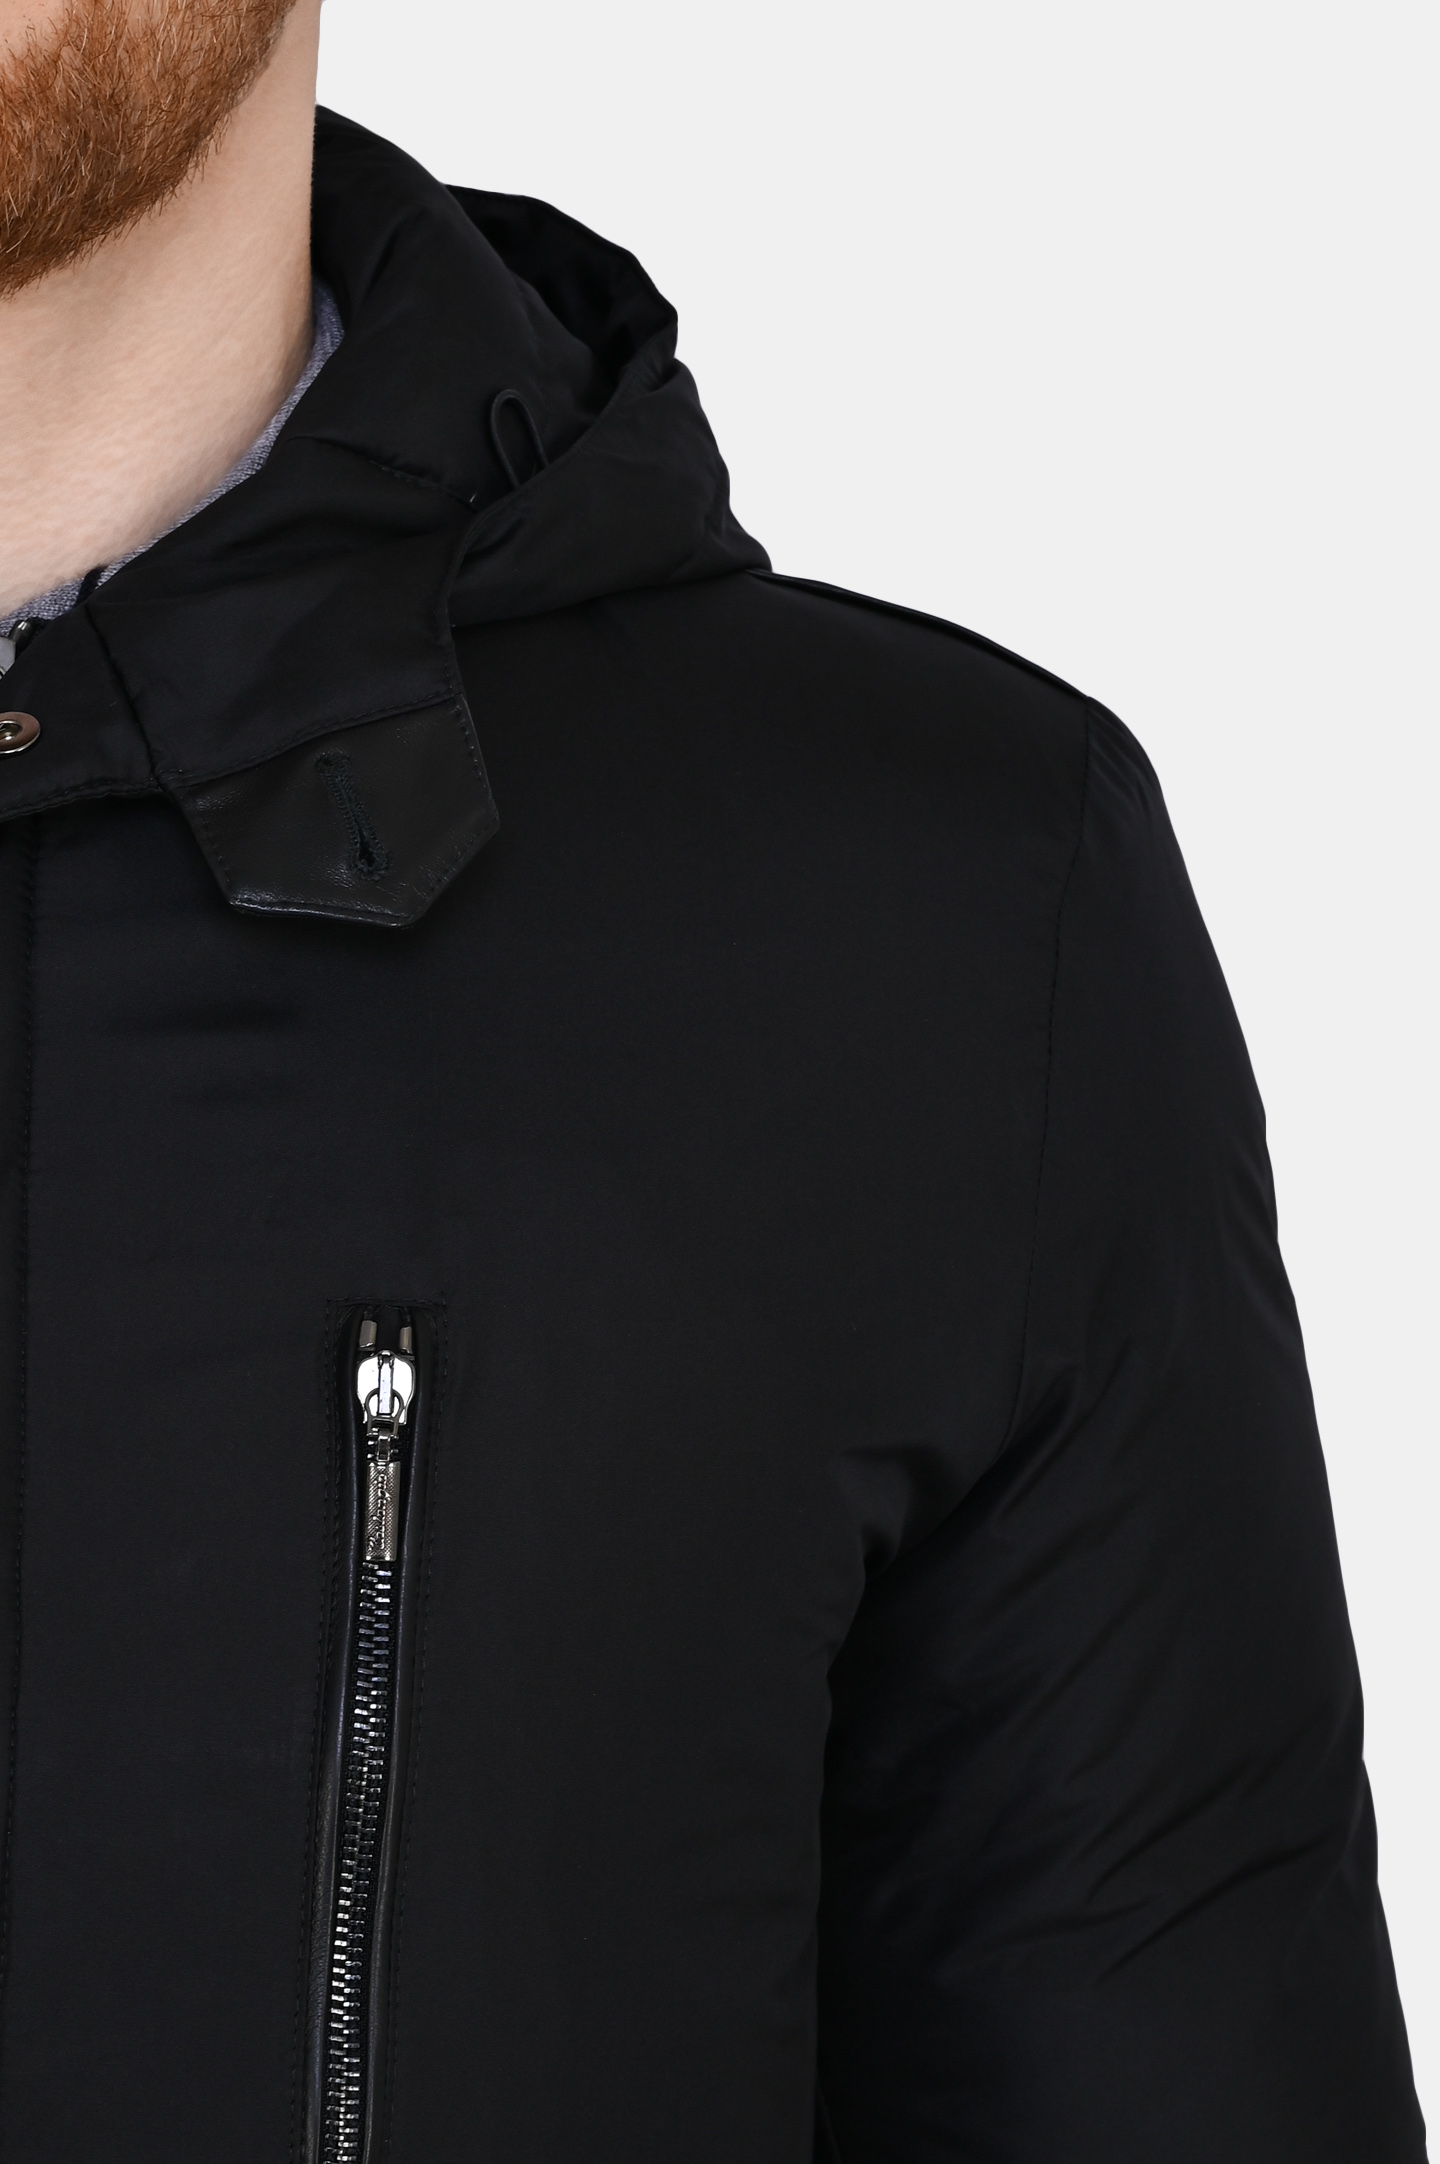 Куртка CASTANGIA MOD 17-23 N154/ZG 899, цвет: Черный, Мужской